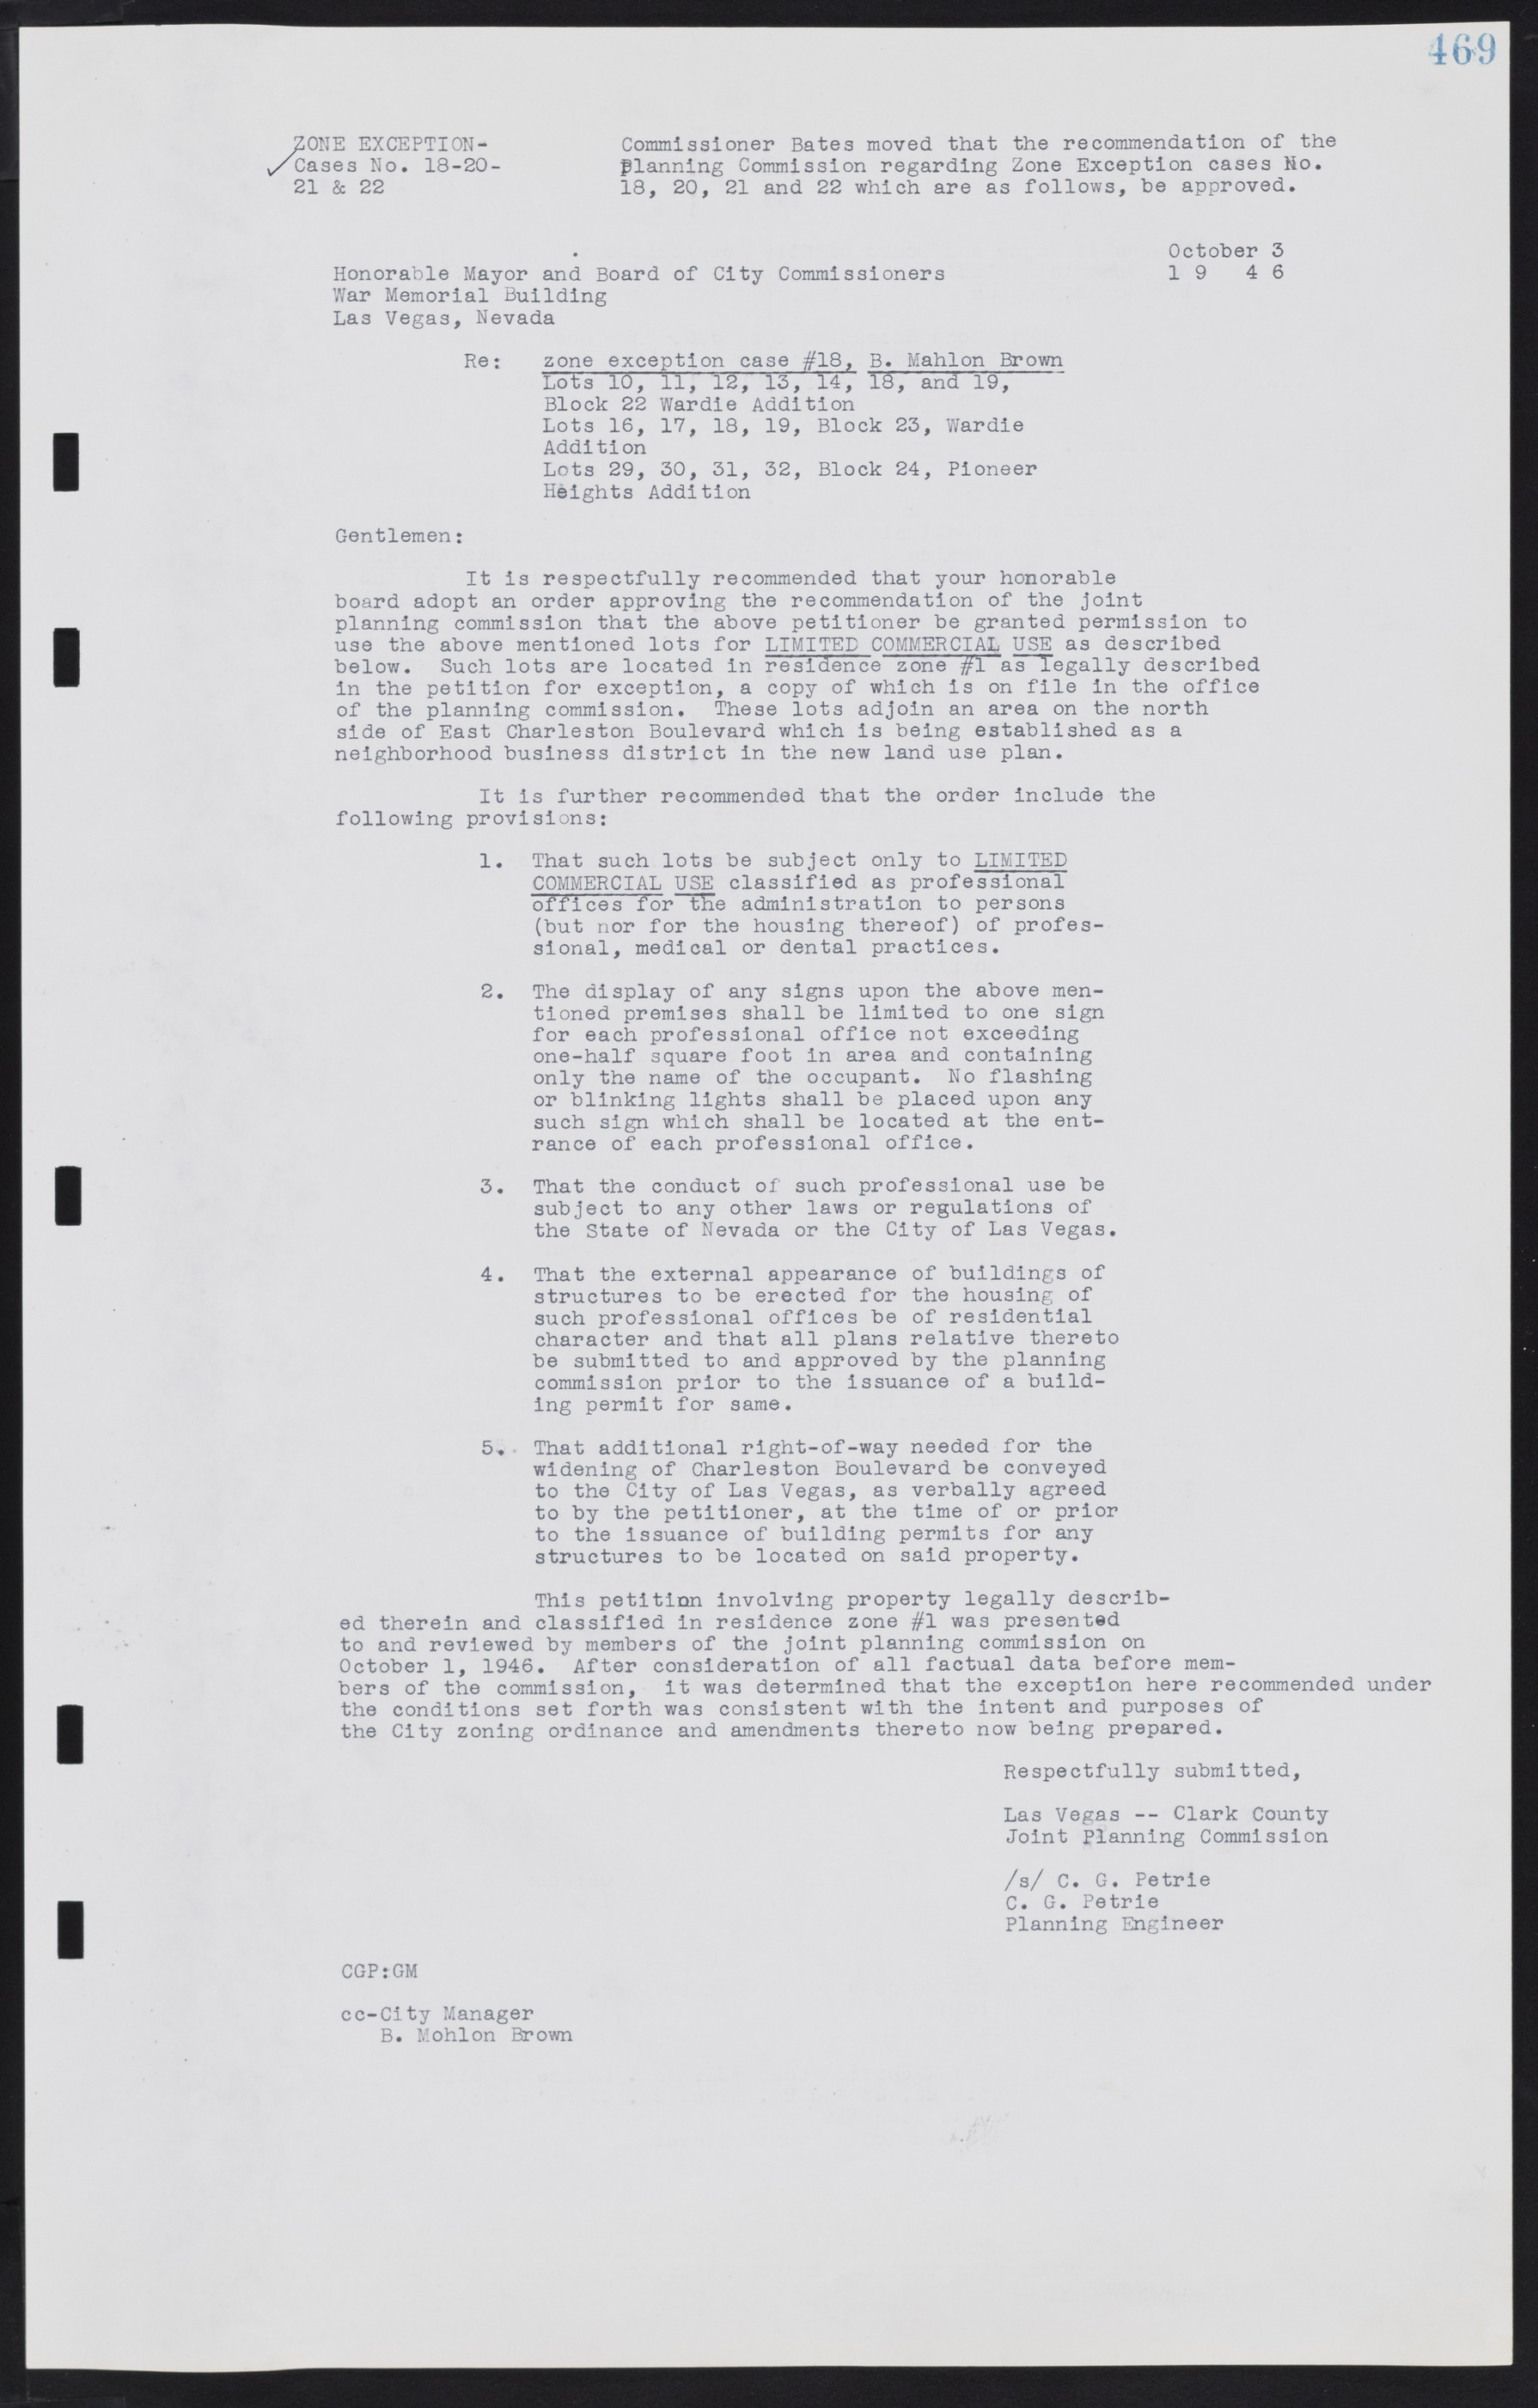 Las Vegas City Commission Minutes, August 11, 1942 to December 30, 1946, lvc000005-500